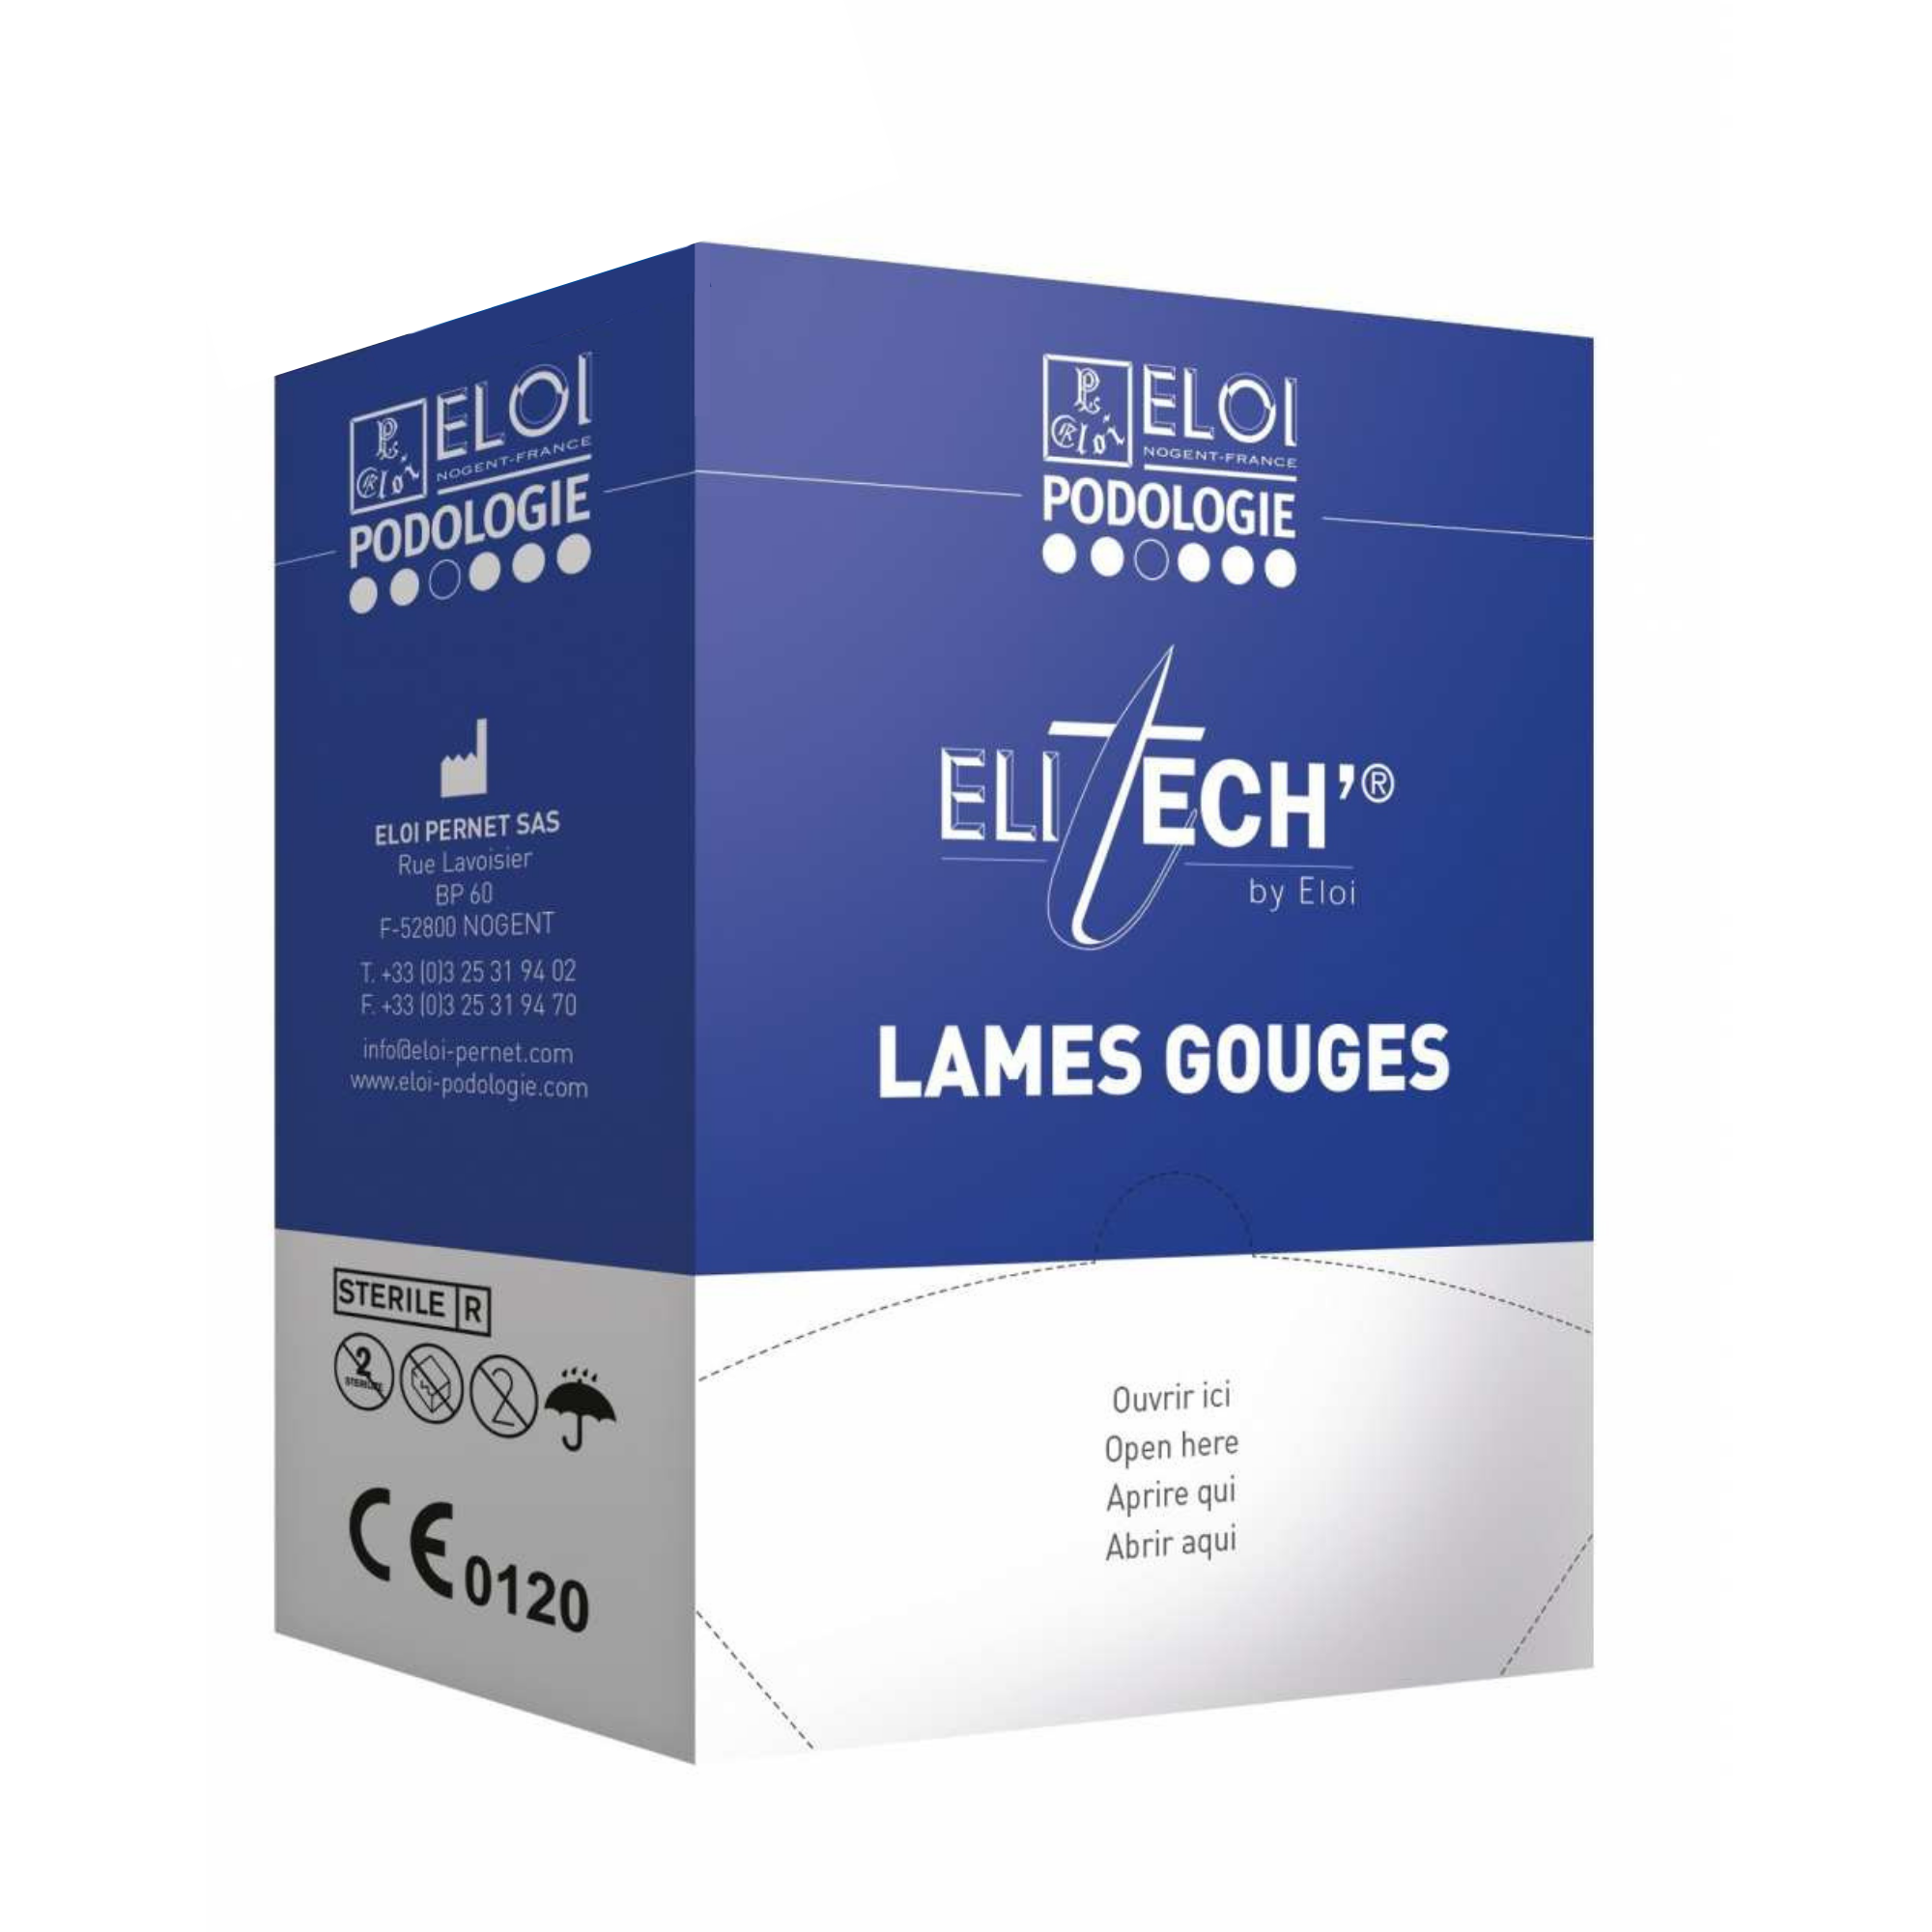 500 lames de gouges N°3 - Elitech by Eloi Eloi Podologie